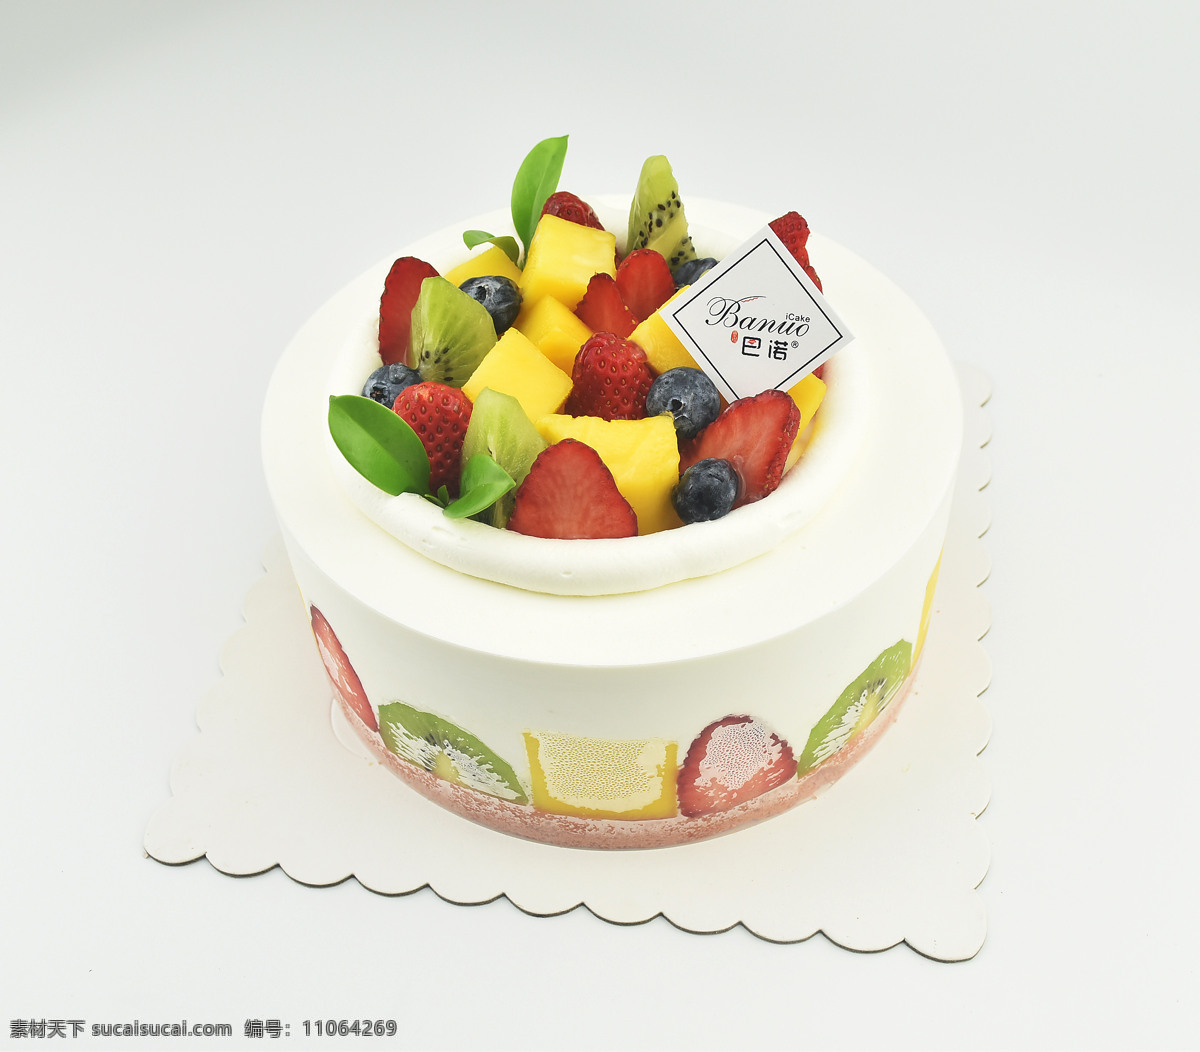 生日蛋糕 西点 蛋糕花样 水果蛋糕 婚礼蛋糕 精美蛋糕 餐饮美食 西餐美食